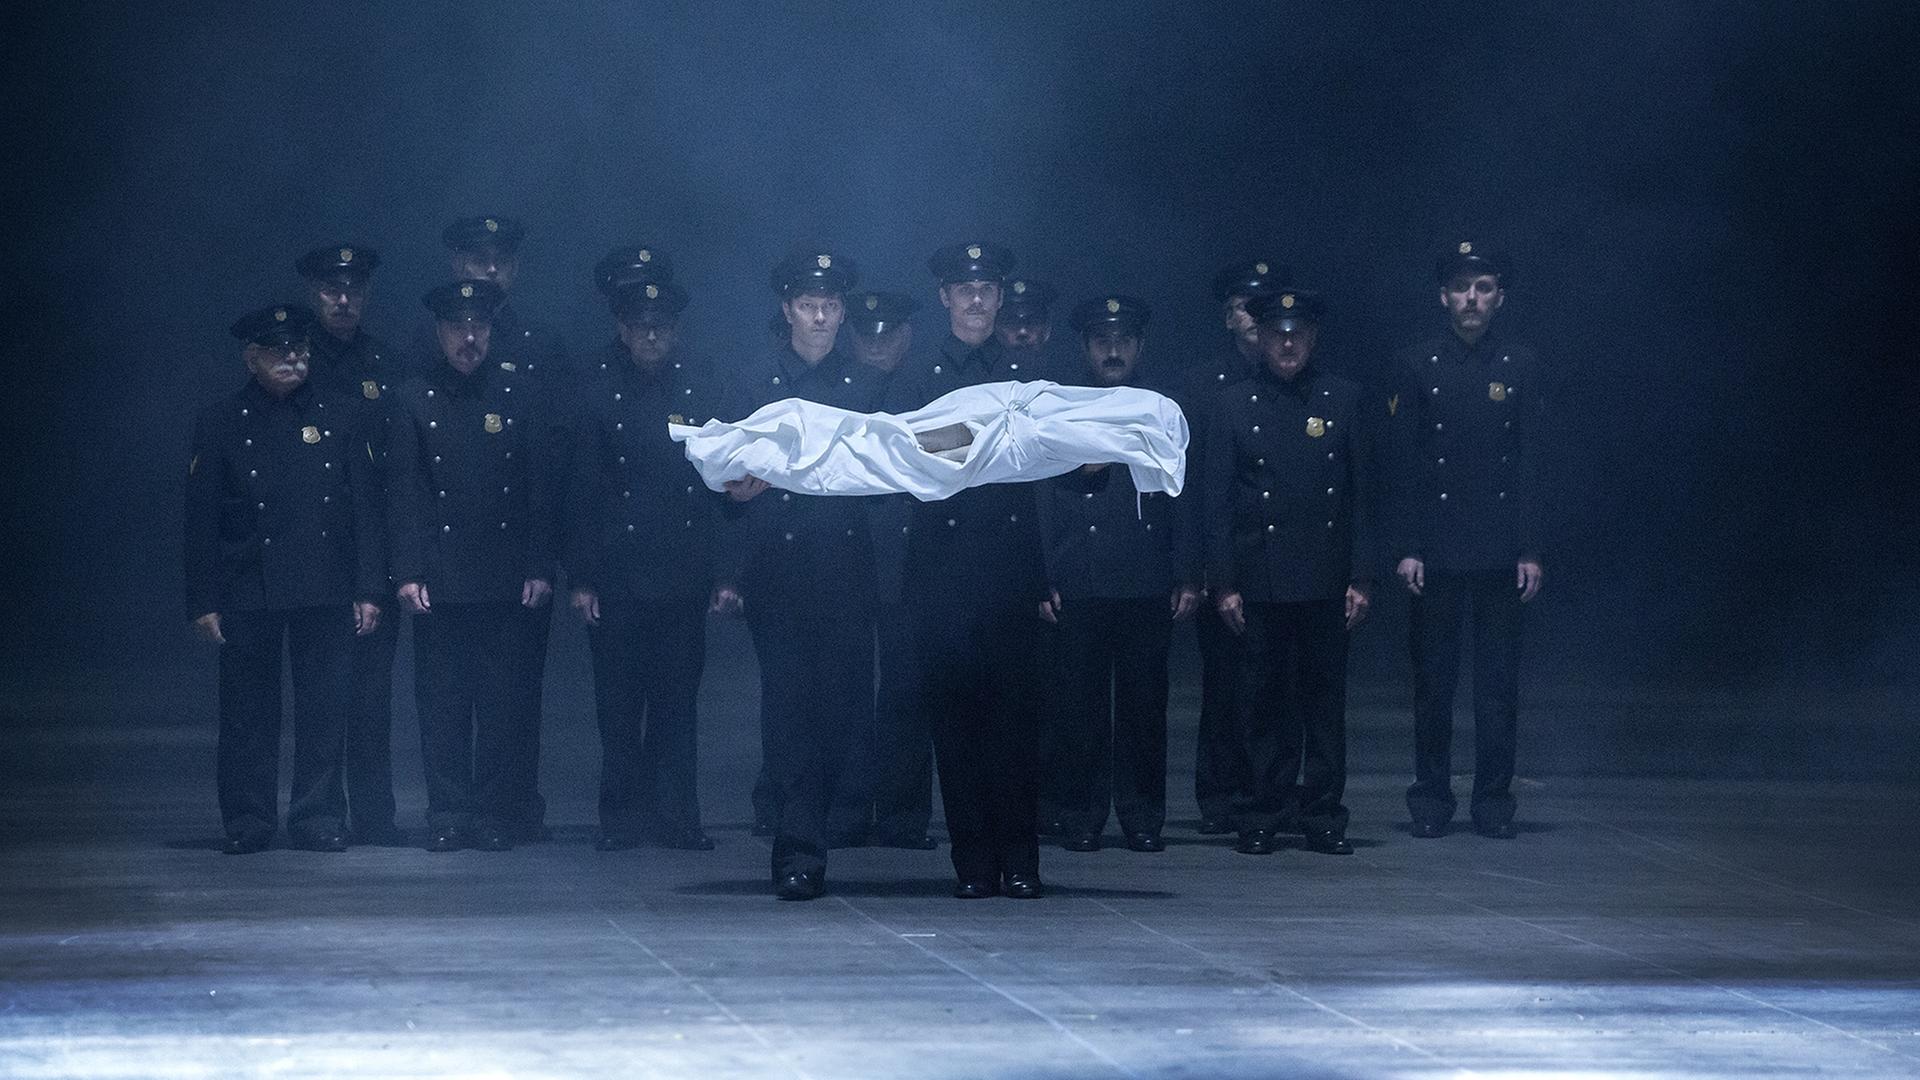 Eine Gruppe Männer in Polizeiuniformen trägt einen kleinen in weißes Tuch gehüllten Körper.